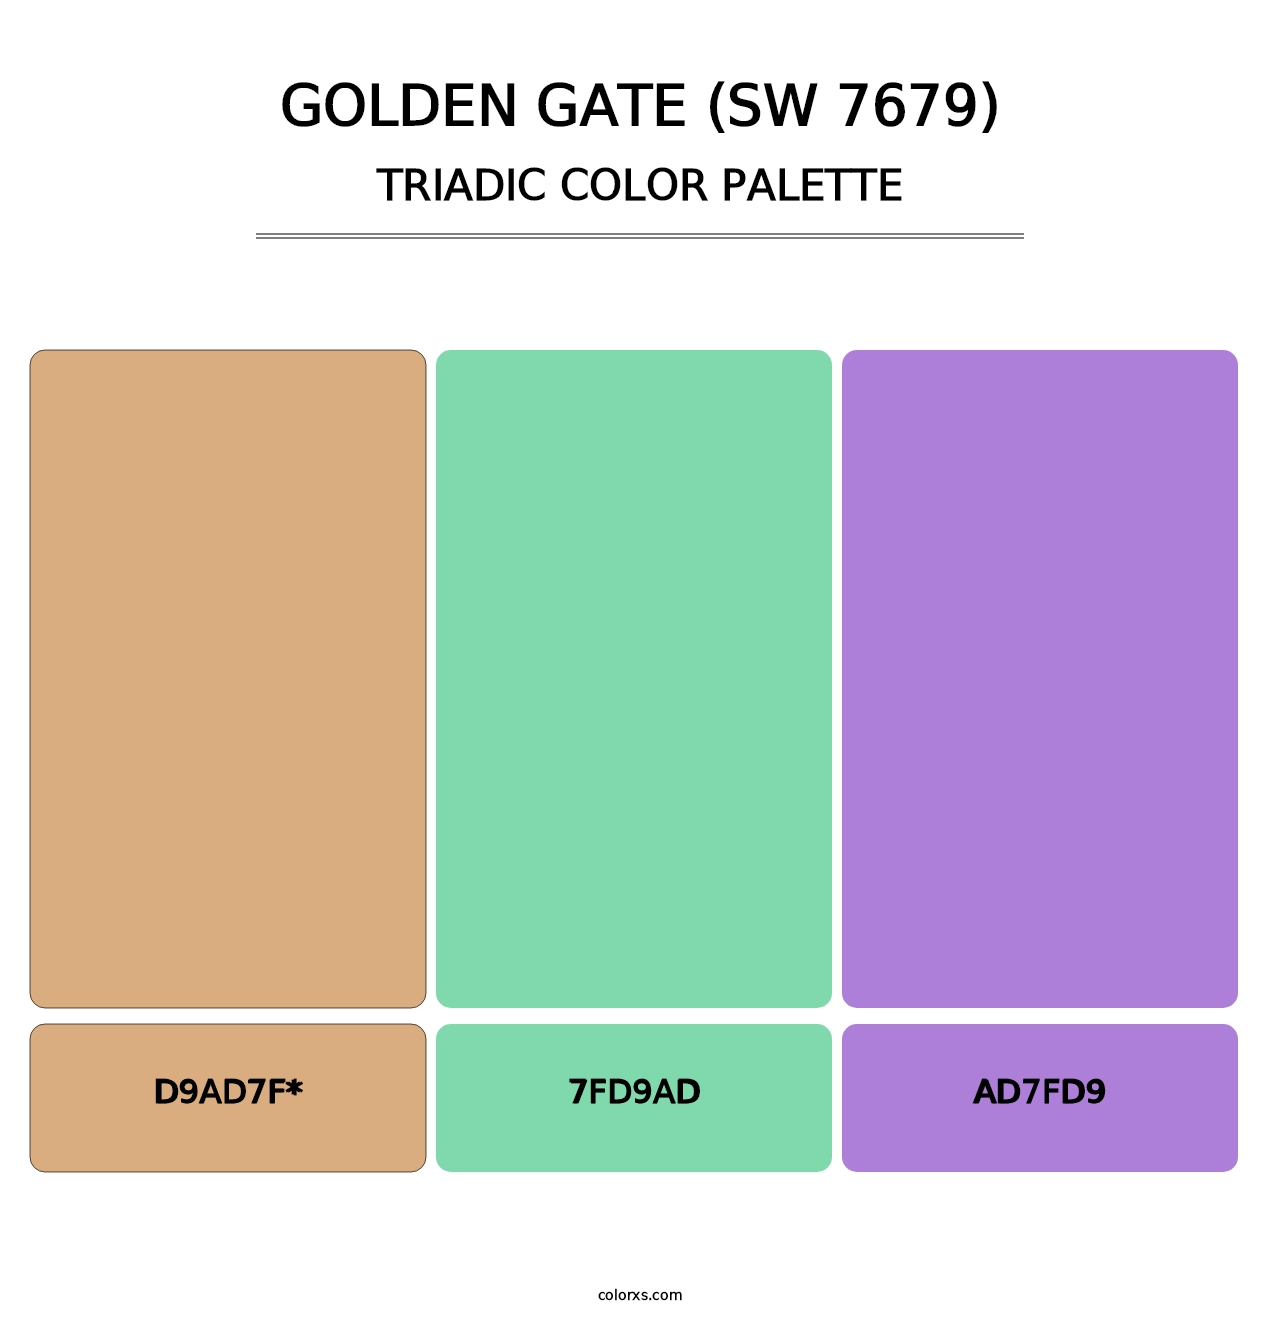 Golden Gate (SW 7679) - Triadic Color Palette